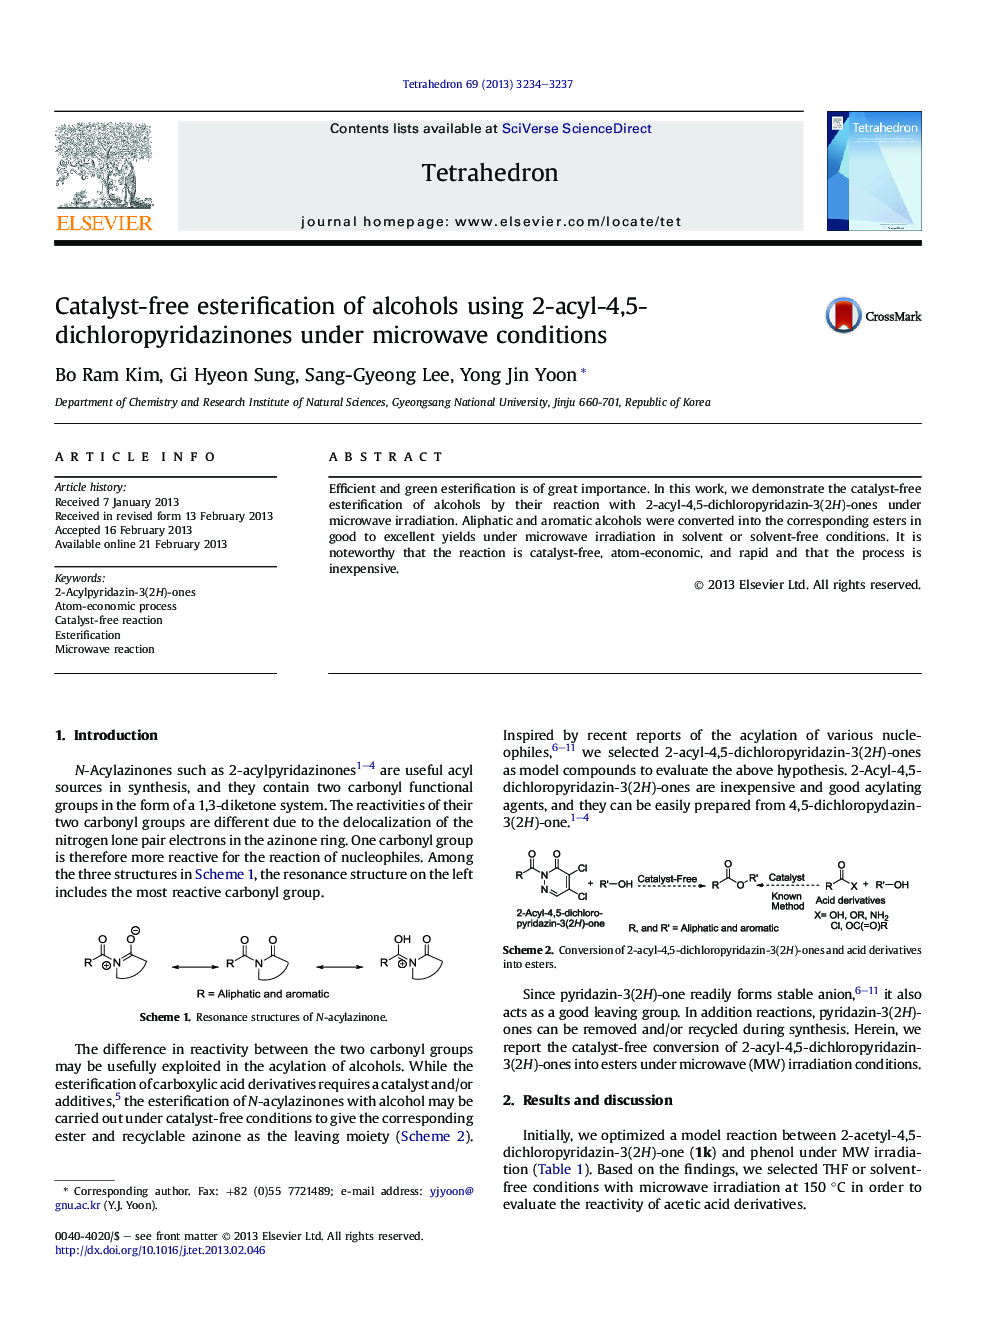 استرینگ کردن الکل های کاتالیزوری با استفاده از 2-آسیل-4،5-دی-کلروفیزیدینون ها در شرایط مایکروویو 